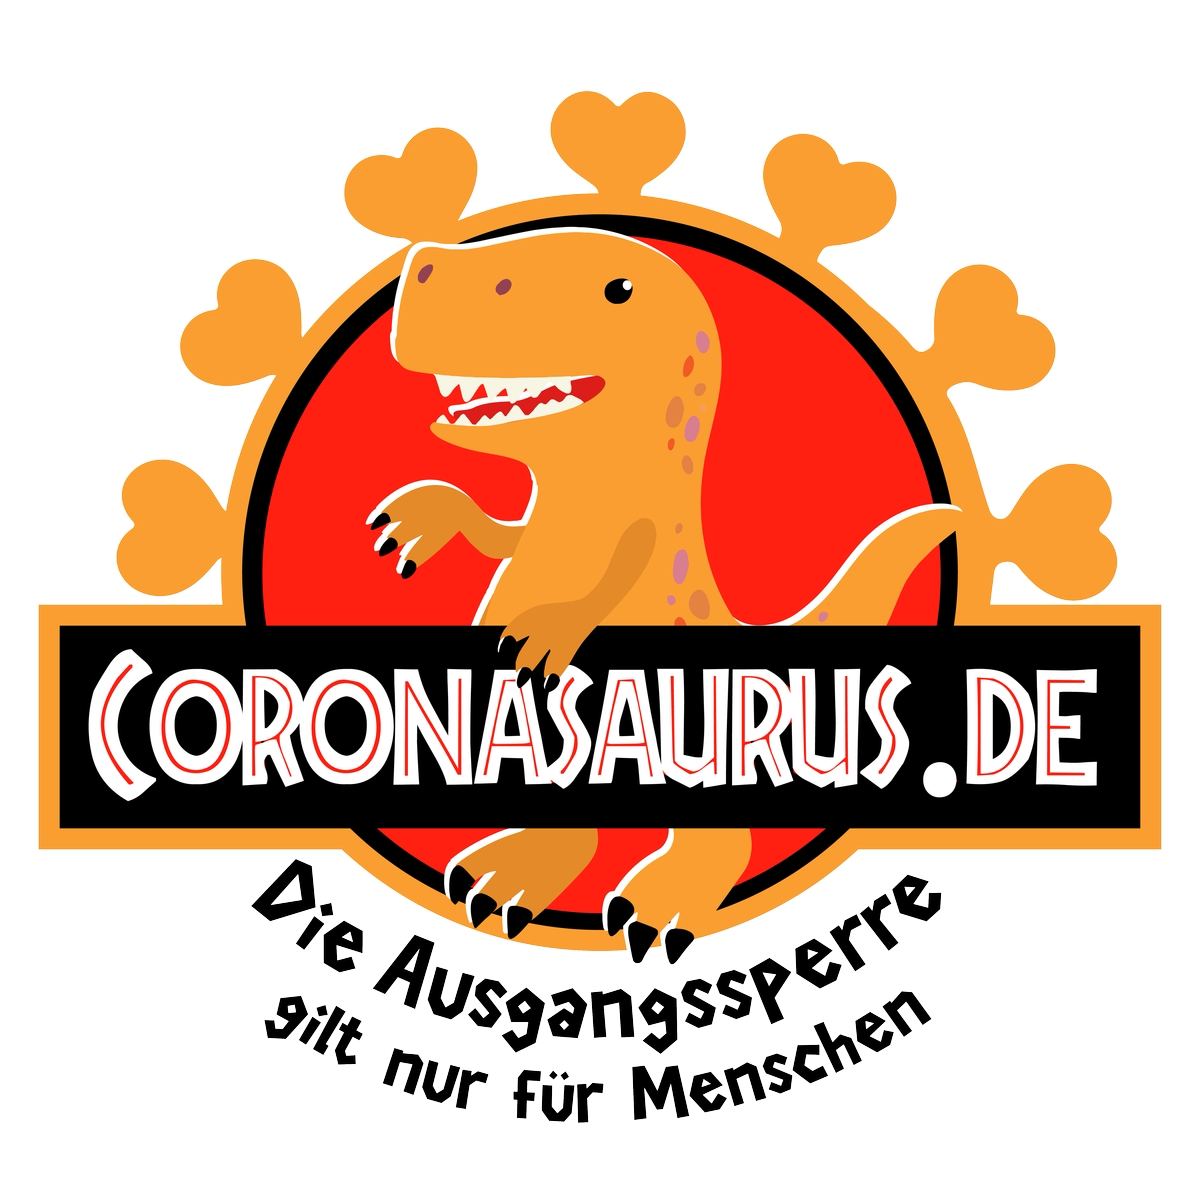 Coronasaurus.de - Die Ausgangssperre gilt nur für Menschen